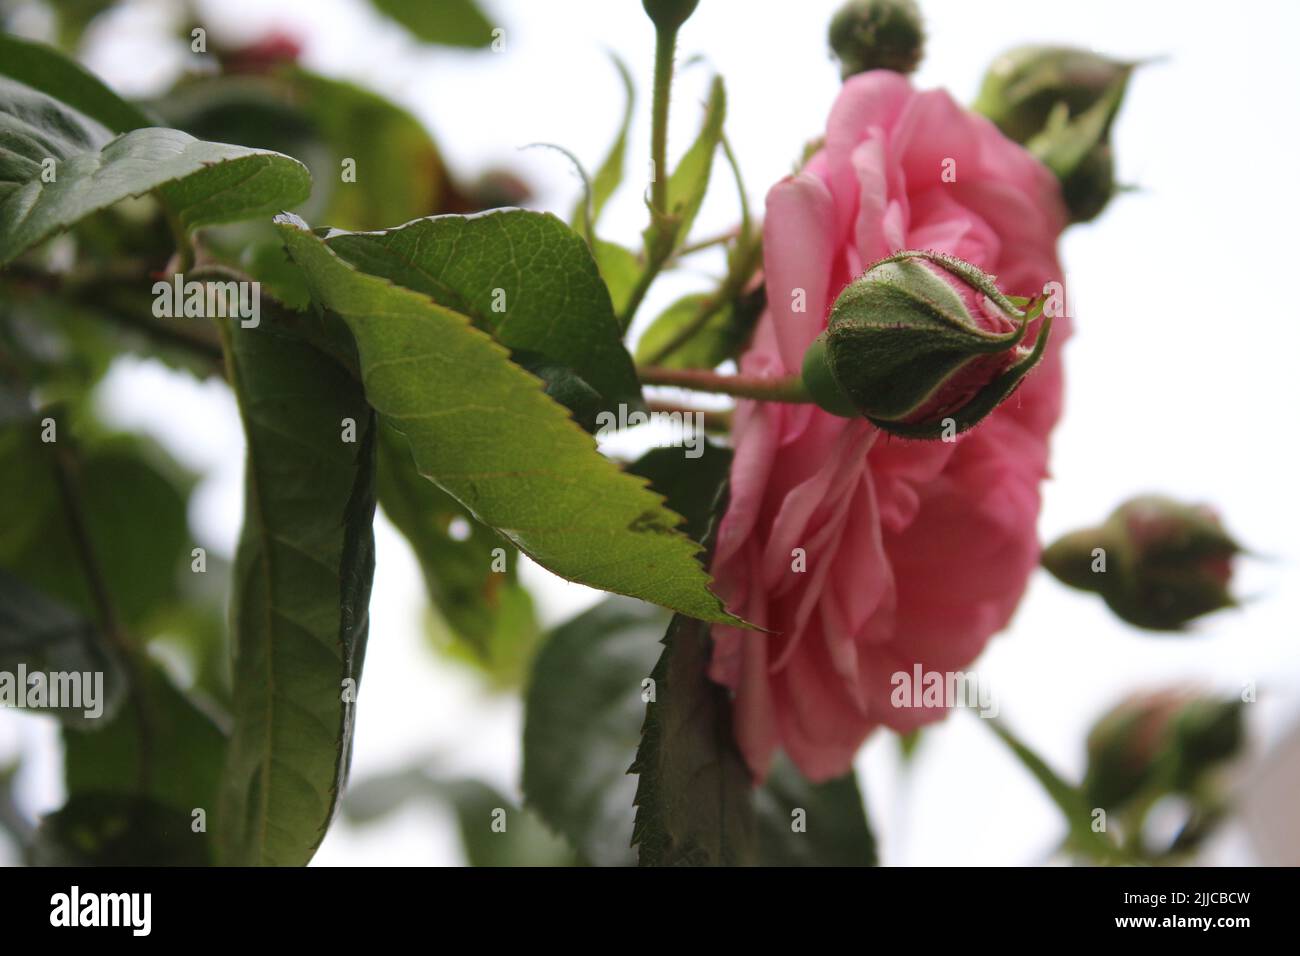 Inflorescence de rose. Photographie de la Reine des fleurs. Un arbre broussaillé aux fleurs roses. Les Rosebuds sont entourés de feuilles vertes. Roses épineuses. Banque D'Images